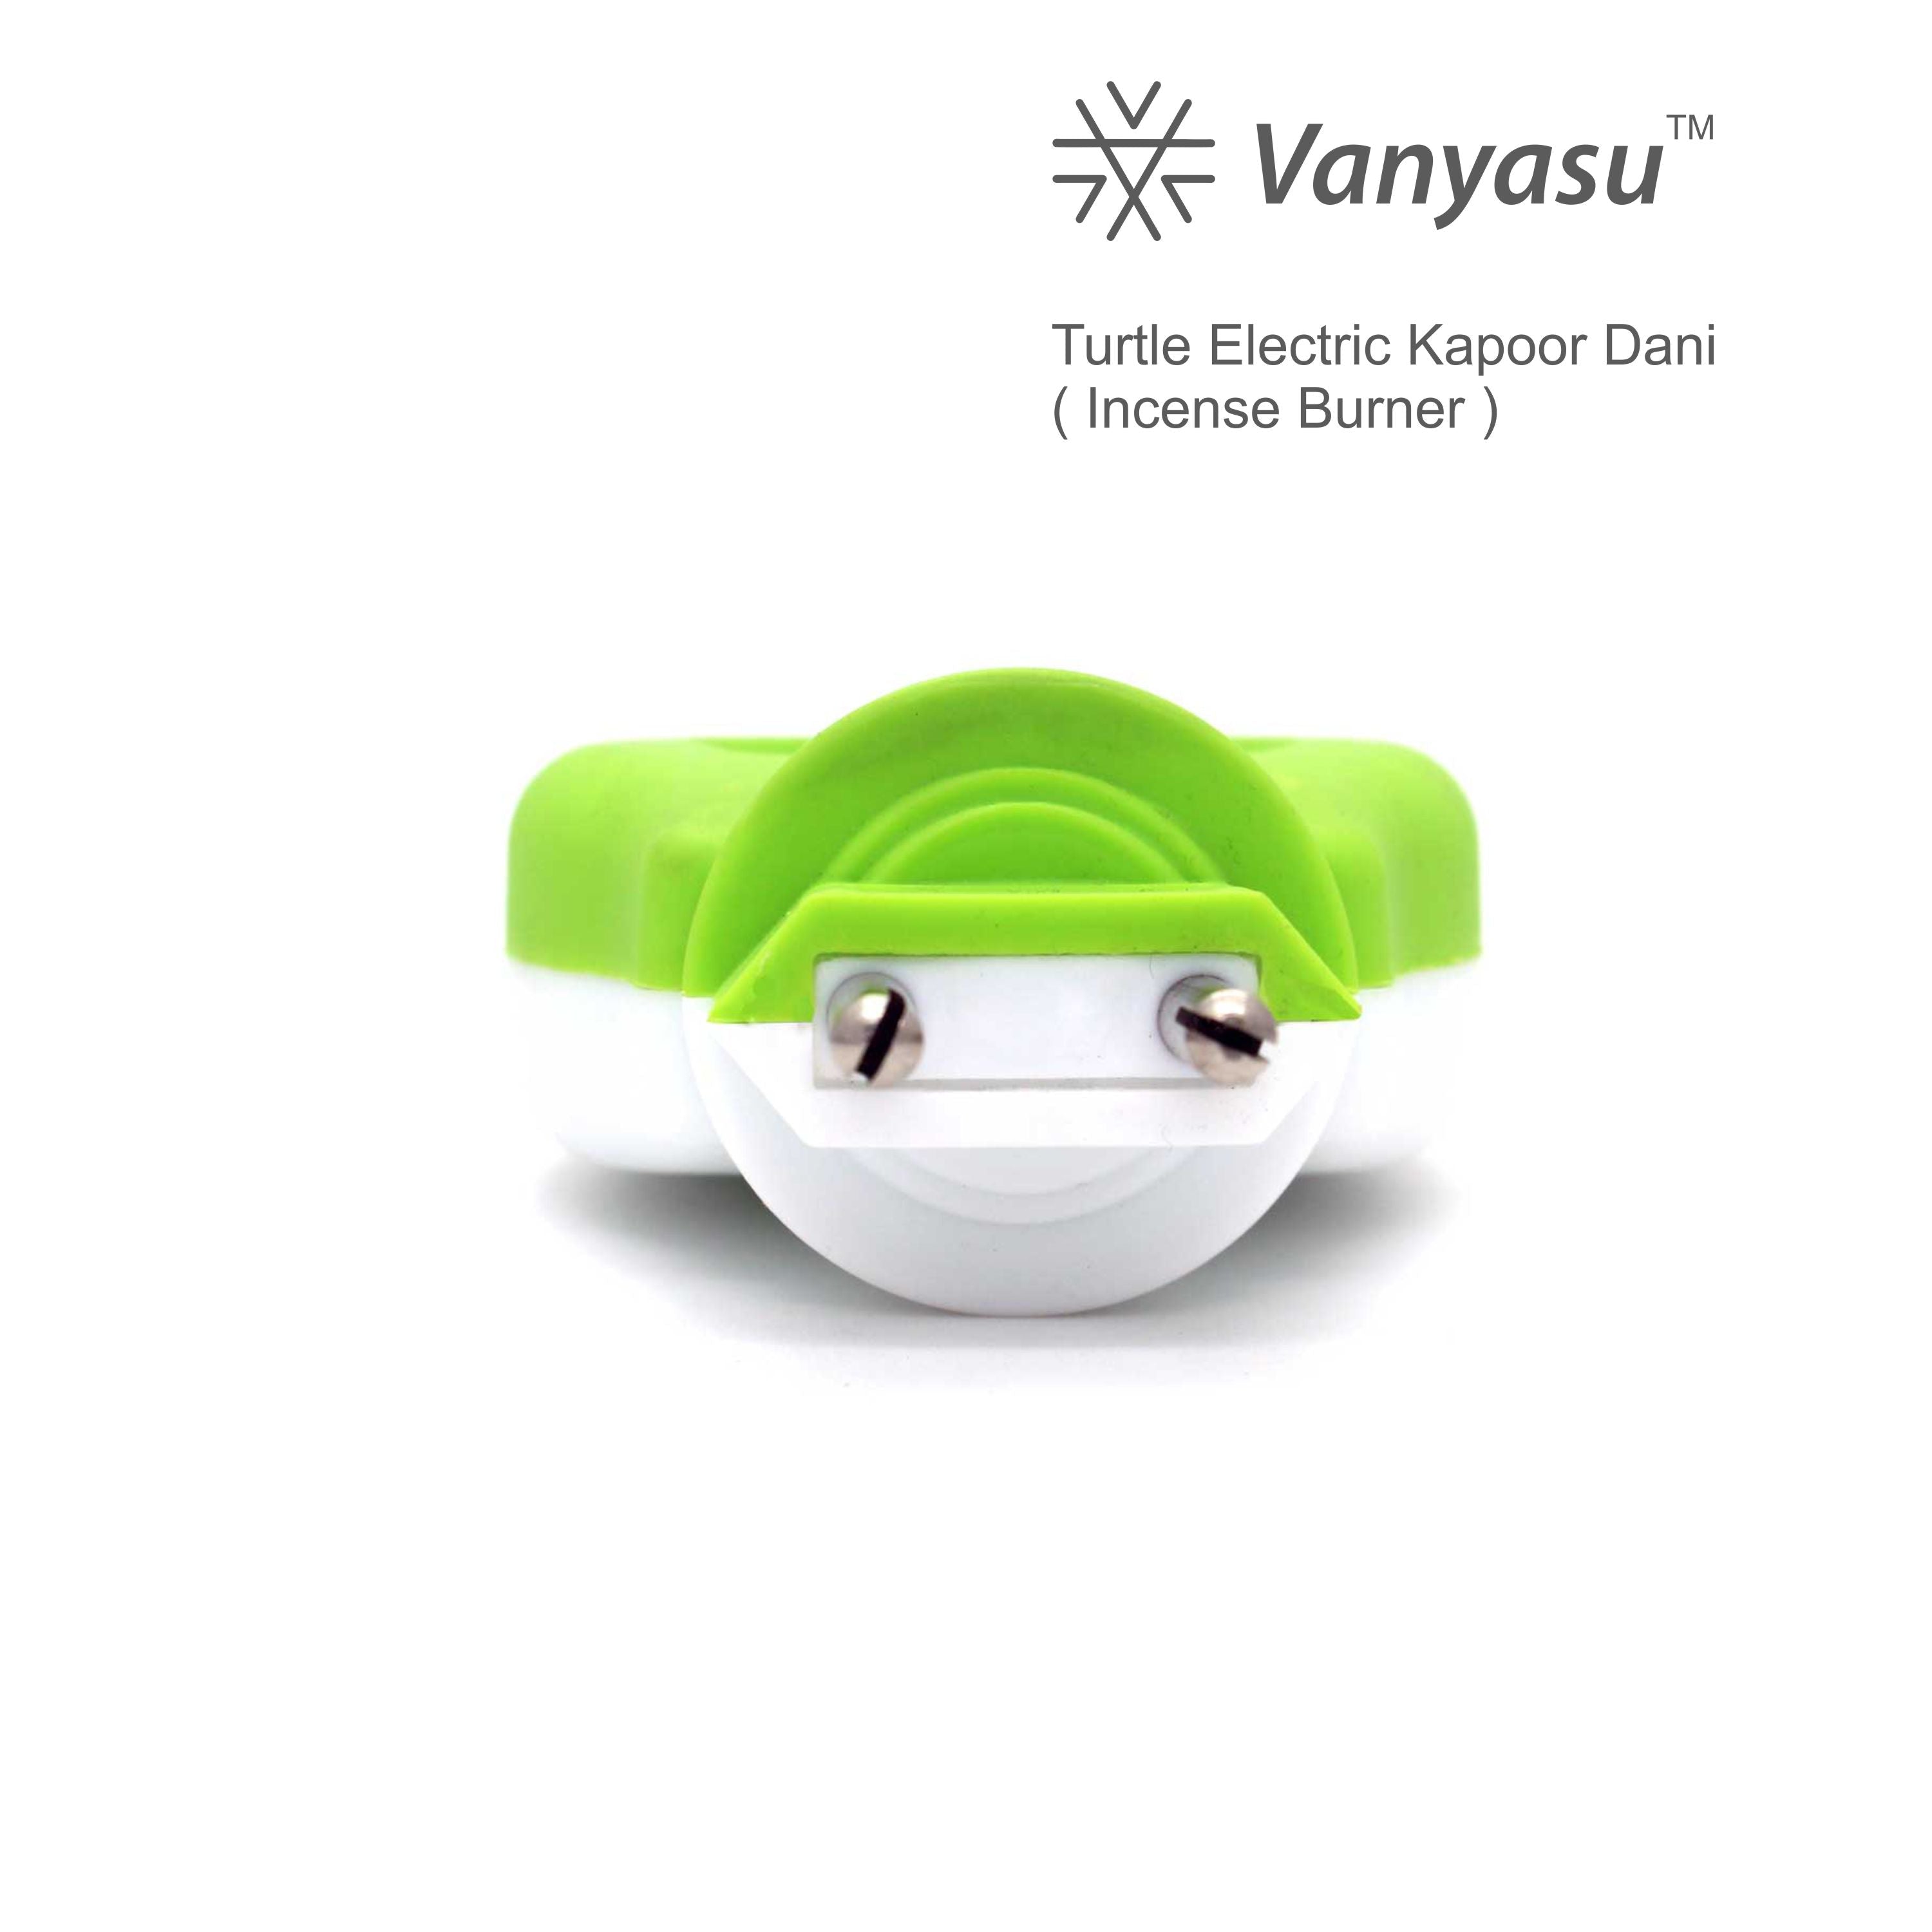 Vanyasu Electric Turtle Kapoor Dani (Incense Burner)